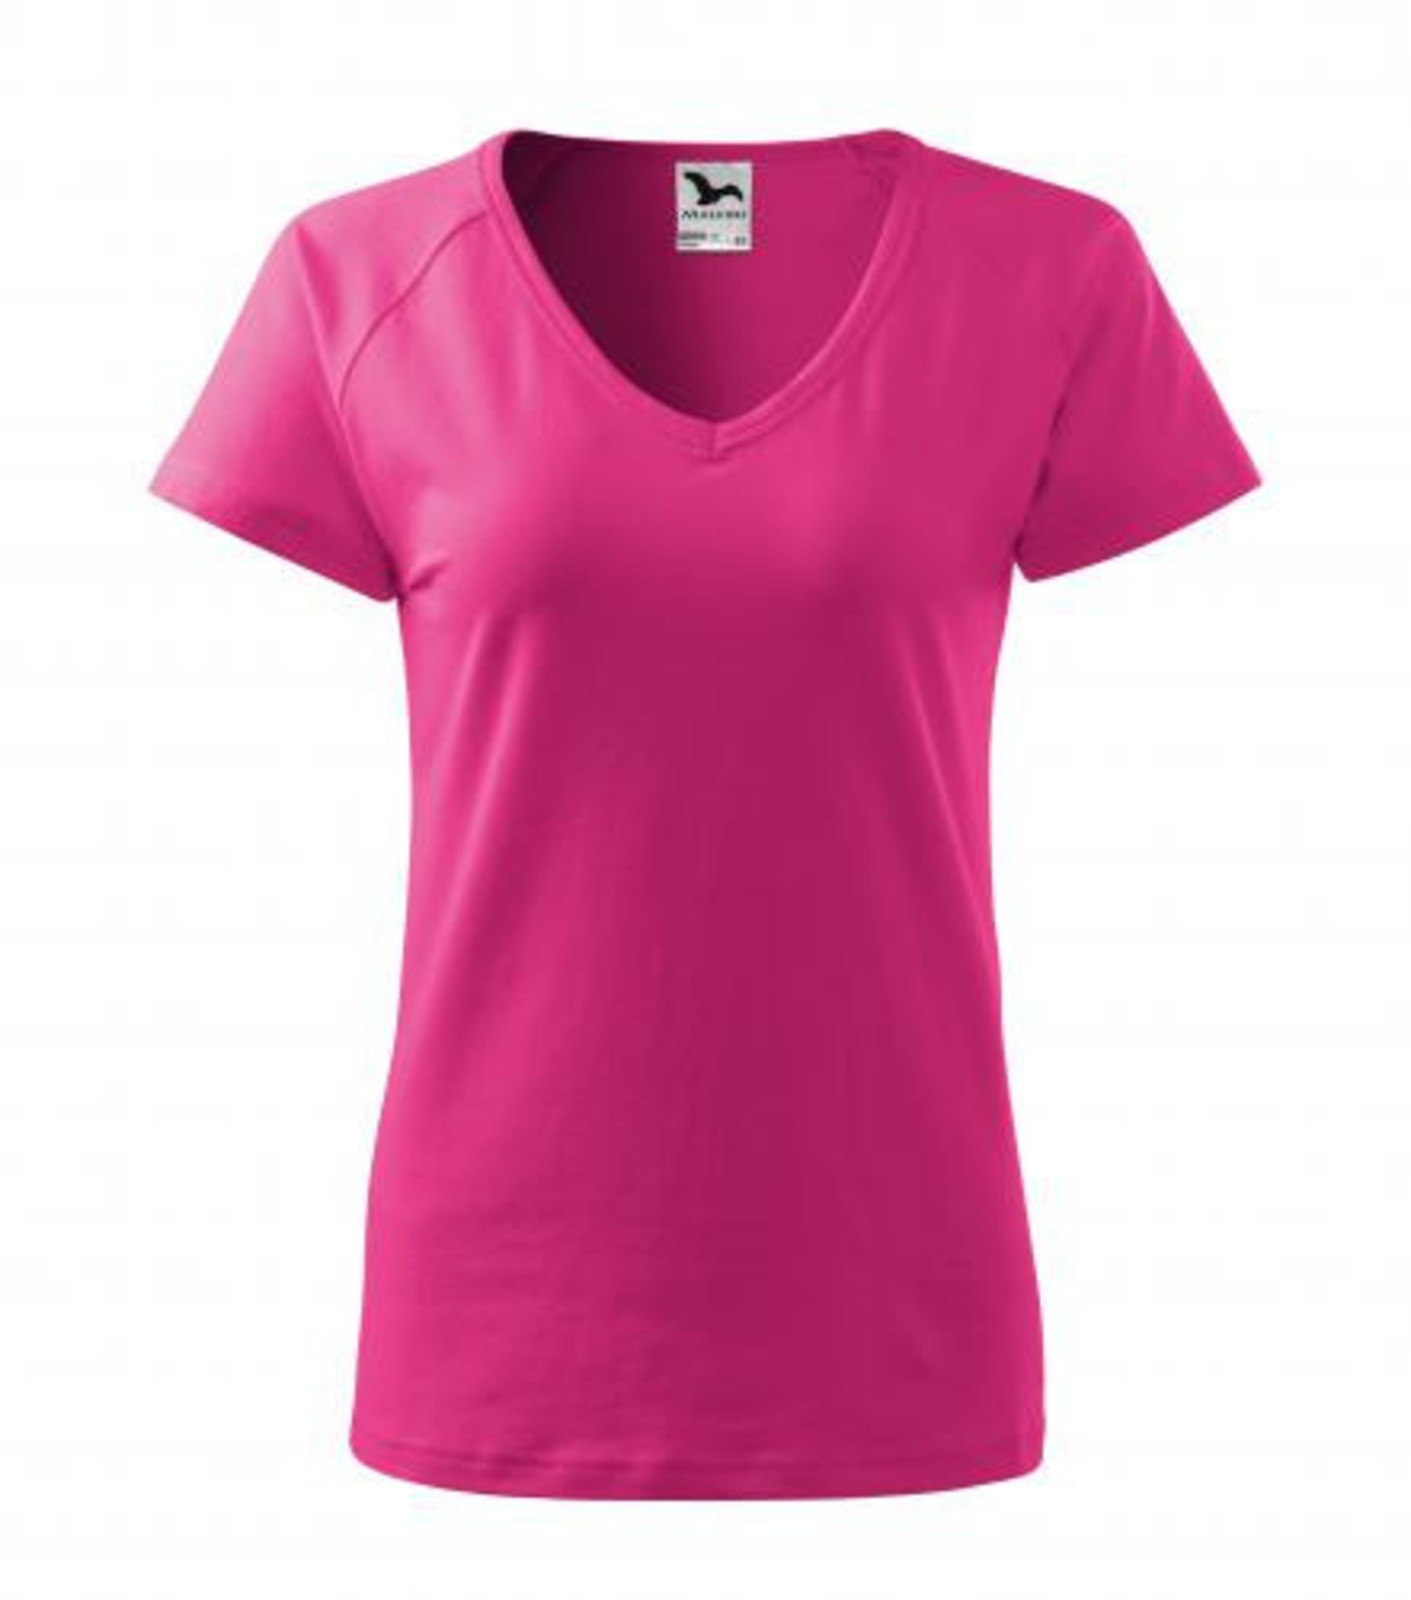 Dámske tričko s V výstrihom Adler Dream 128 - veľkosť: L, farba: purpurová